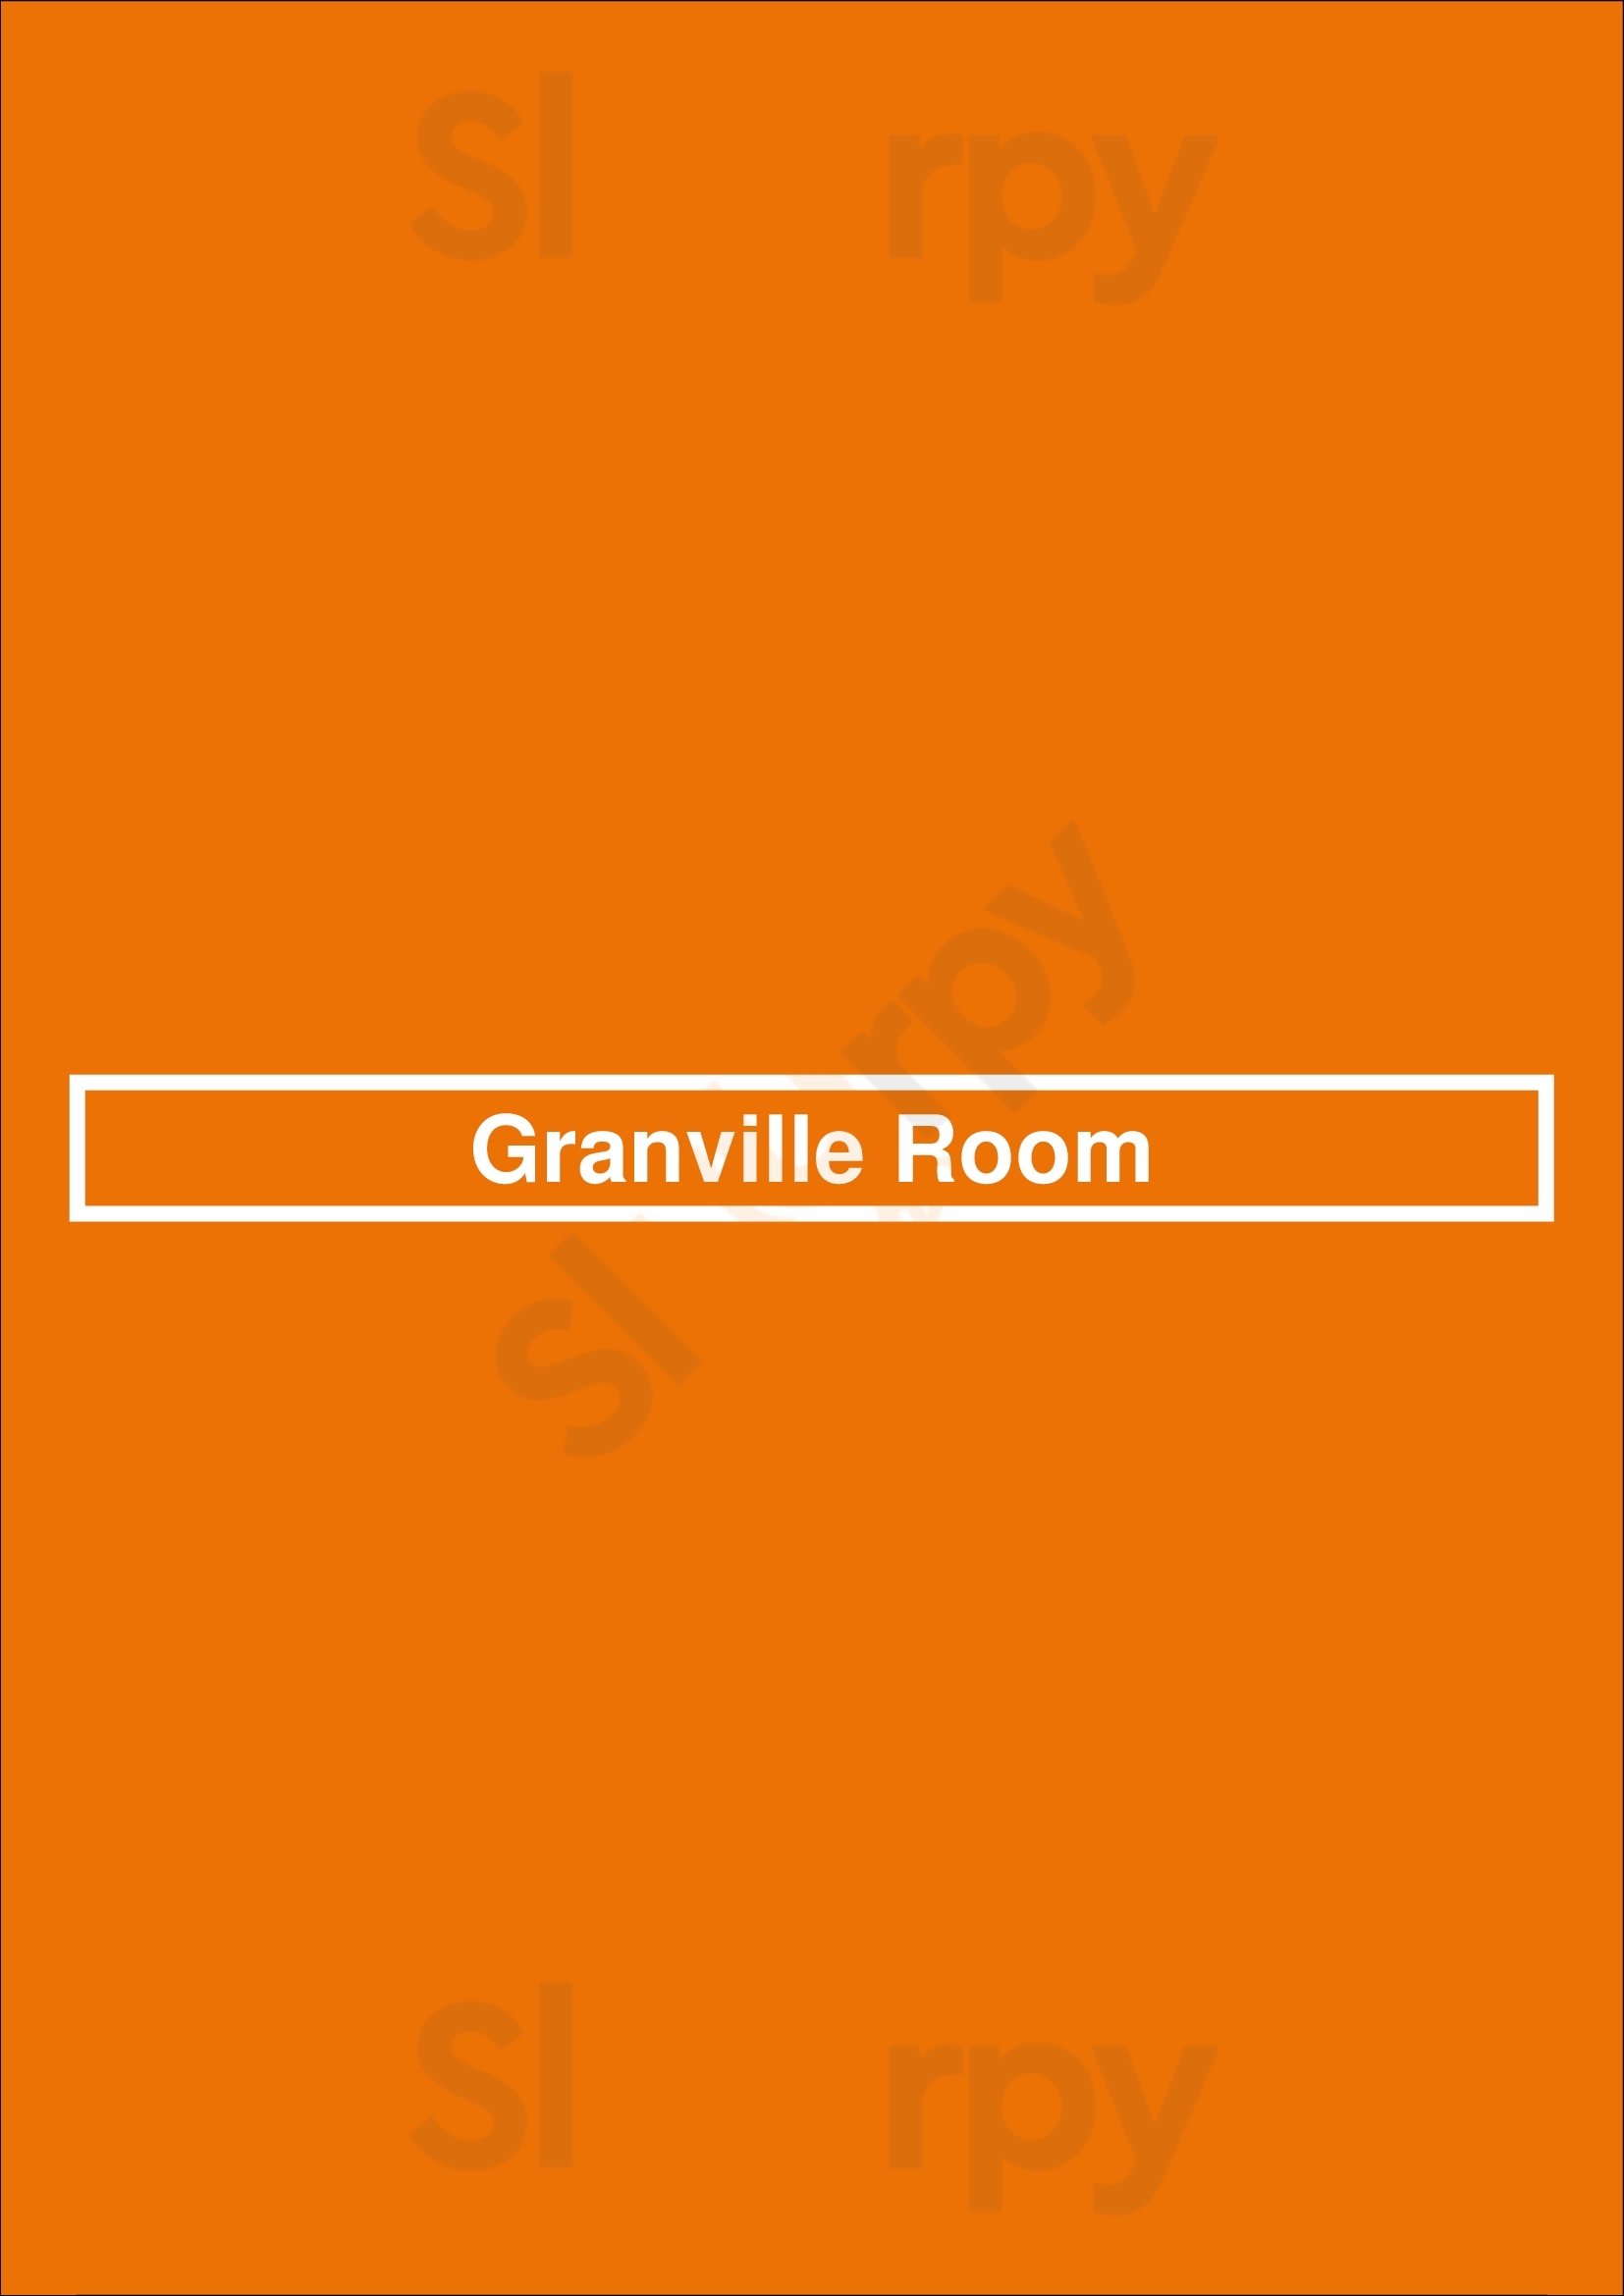 Granville Room Vancouver Menu - 1